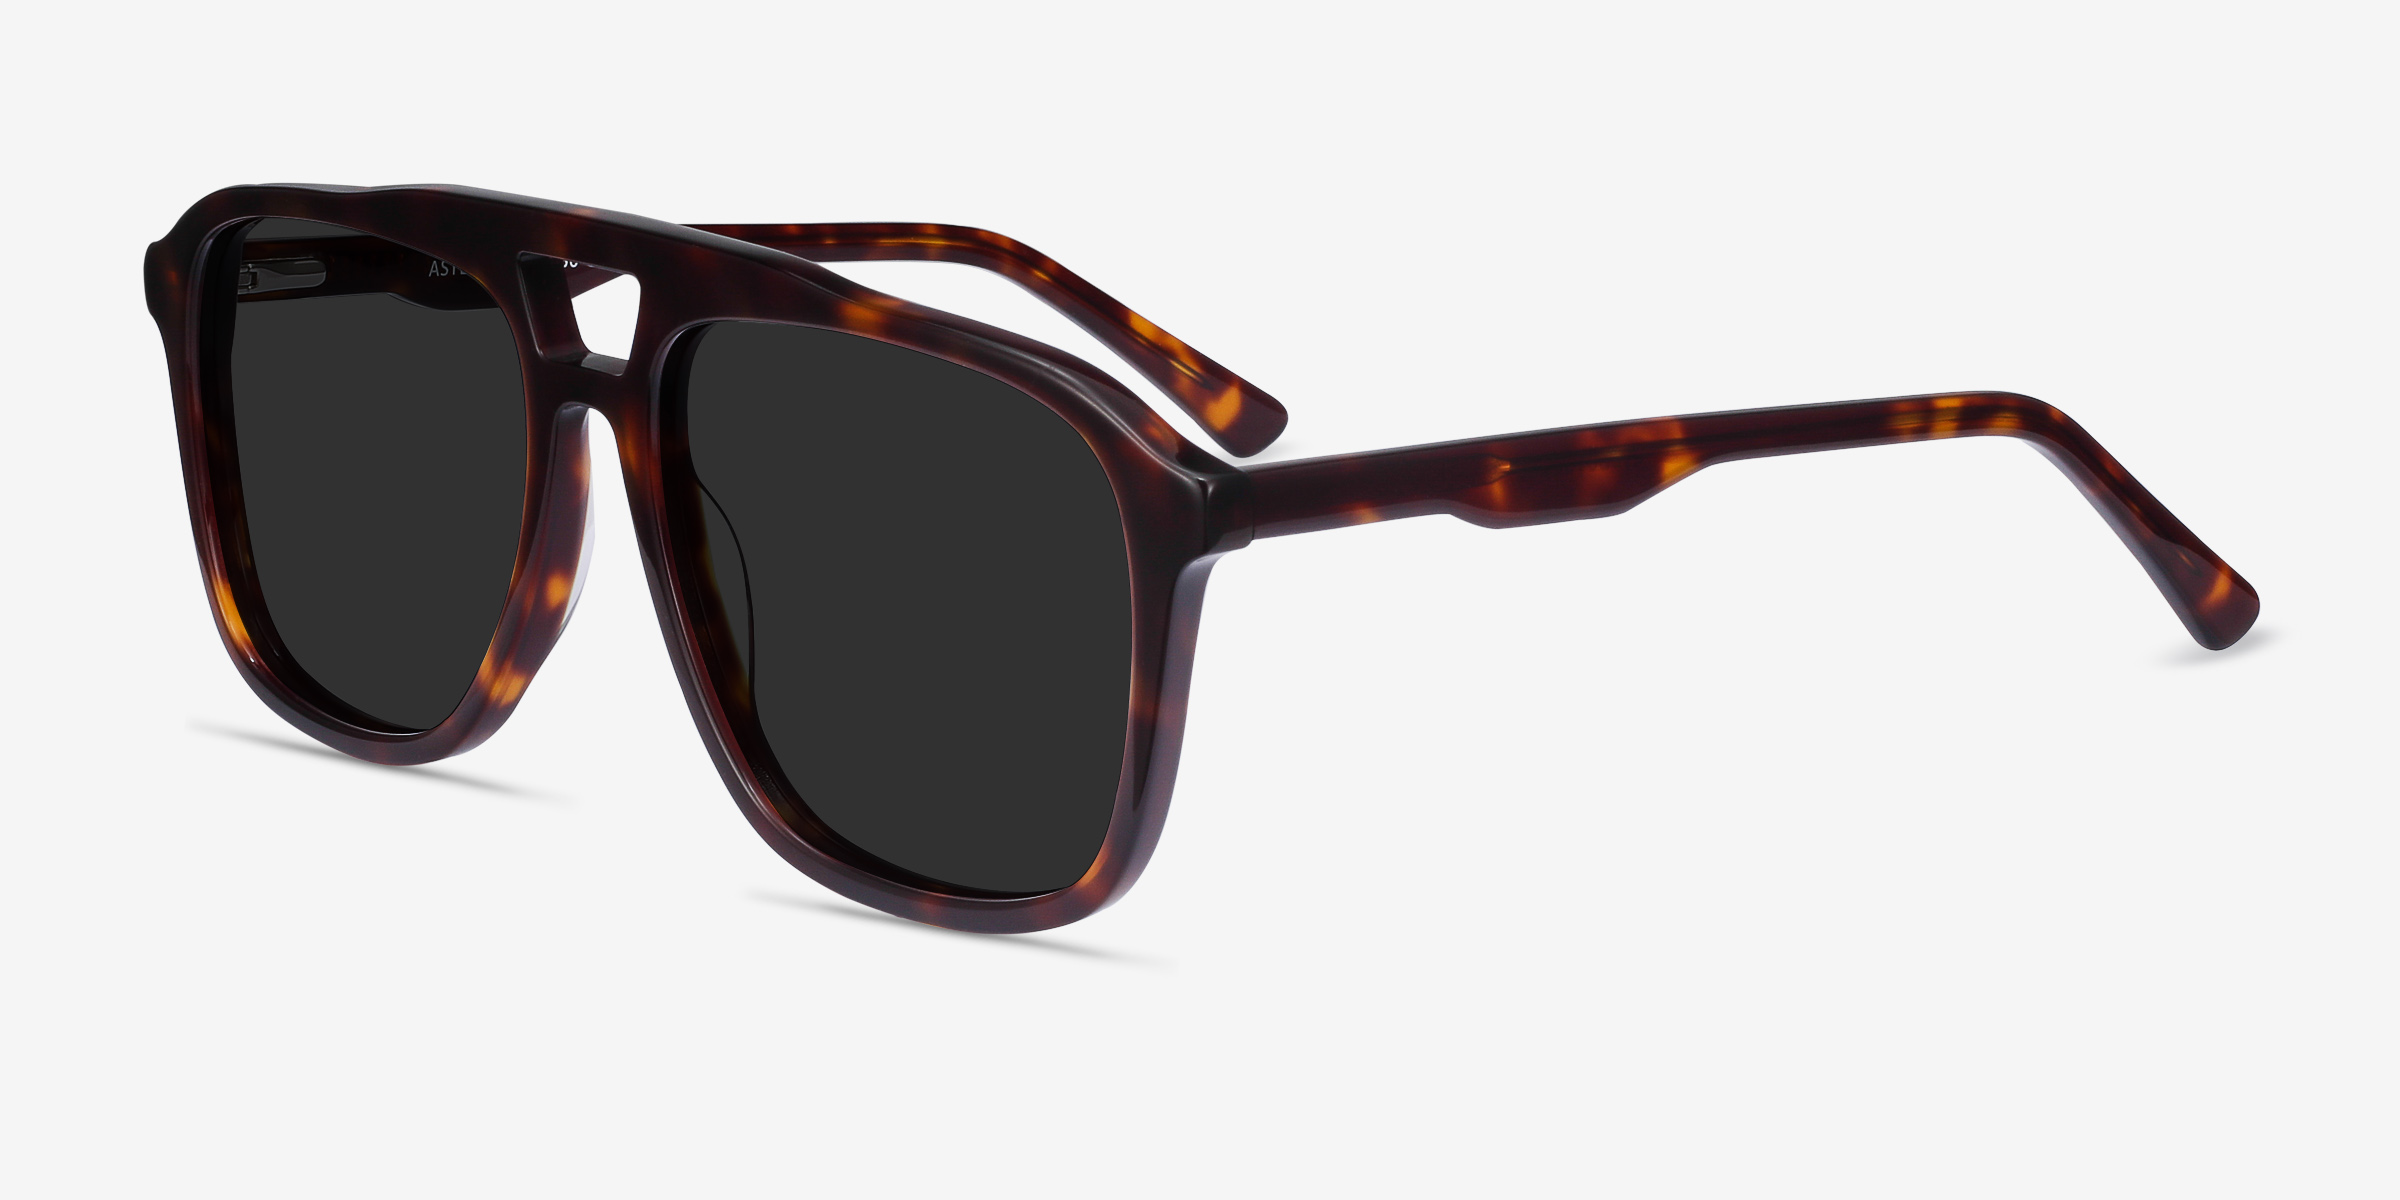 Aster Aviator Dark Tortoise Frame Sunglasses For Men Eyebuydirect